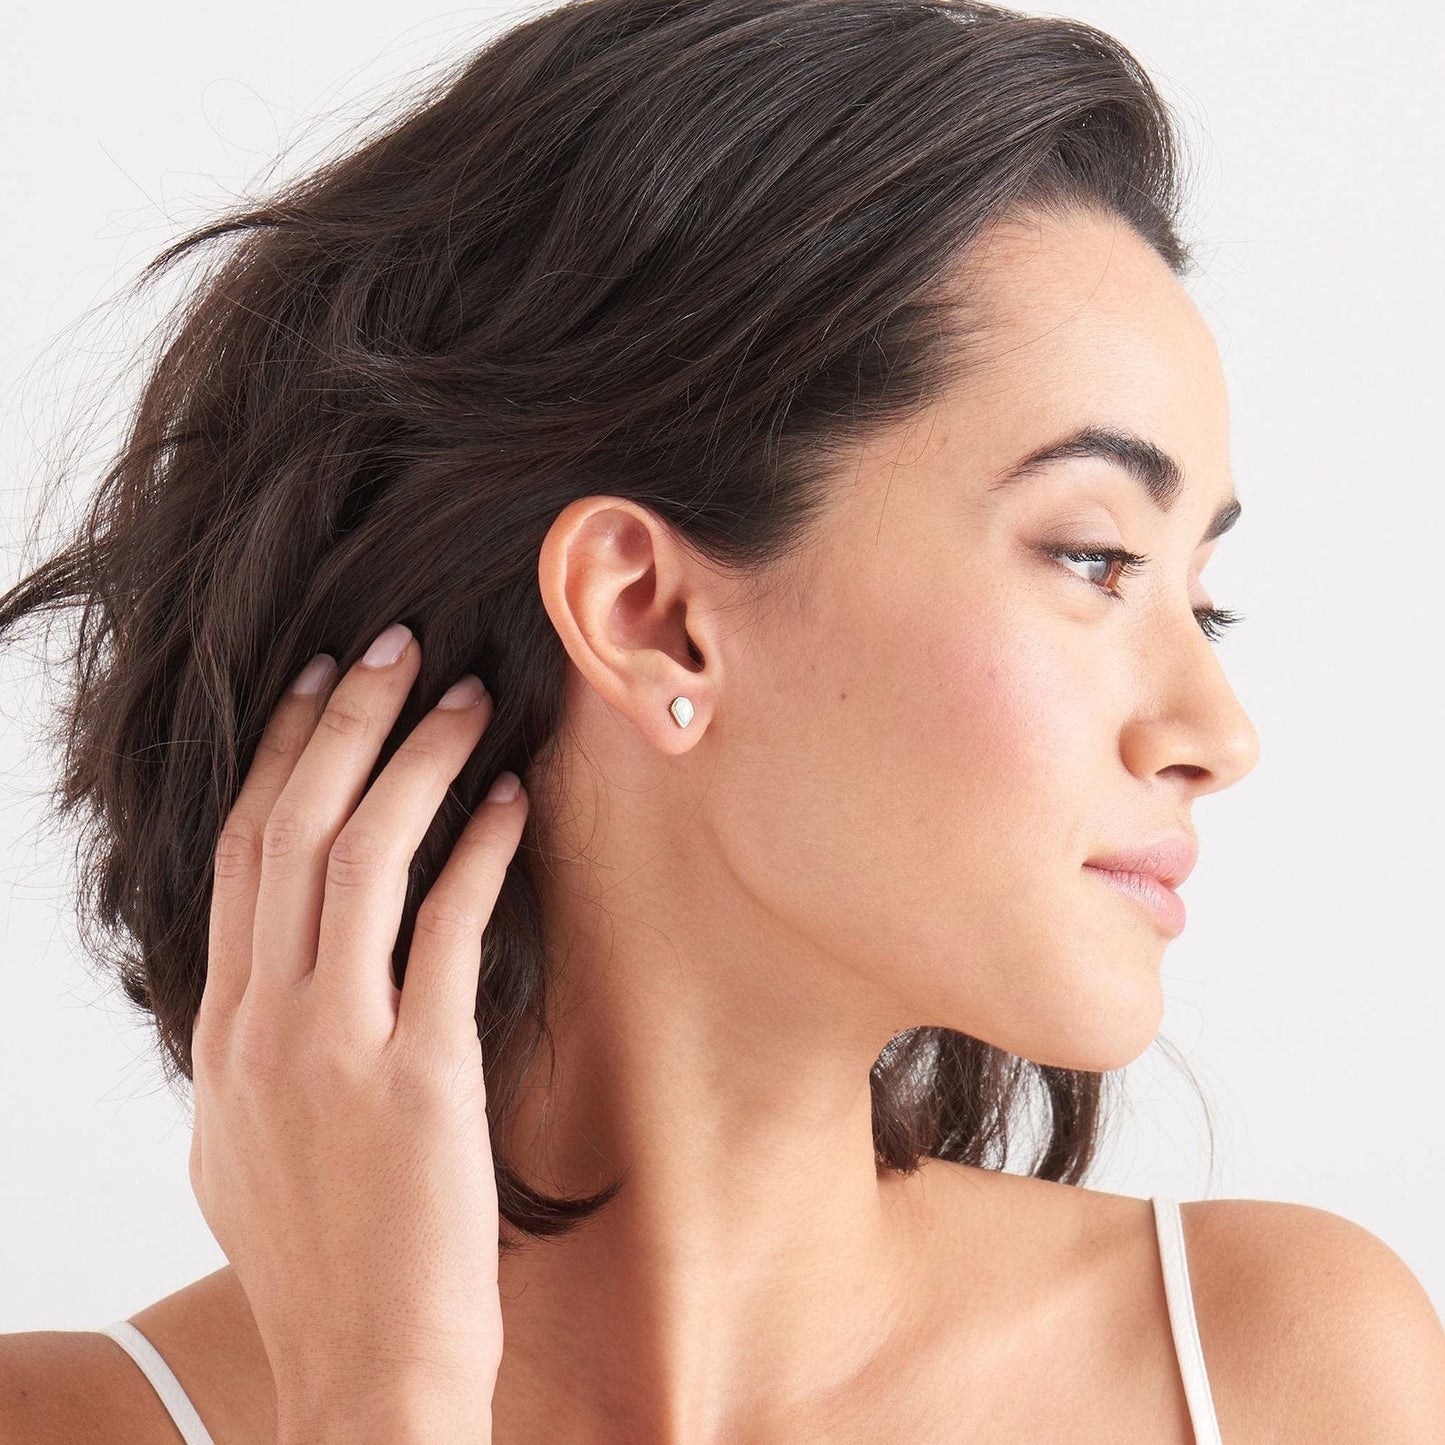 EAR-GPL Opal Color Gold Stud Earrings